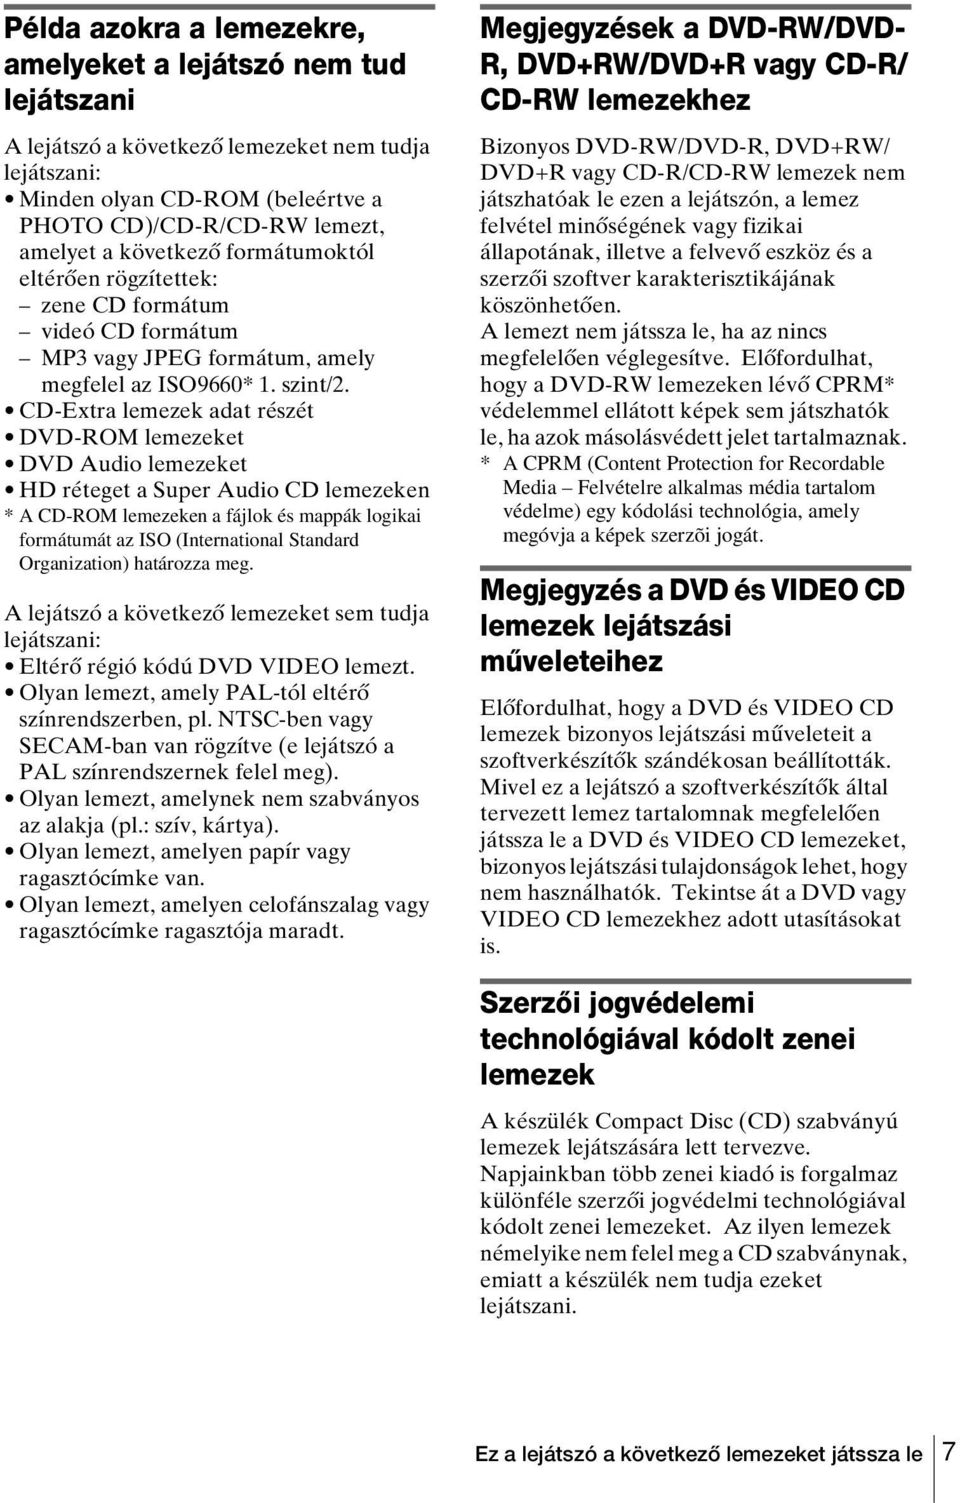 CD-Extra lemezek adat részét DVD-ROM lemezeket DVD Audio lemezeket HD réteget a Super Audio CD lemezeken * A CD-ROM lemezeken a fájlok és mappák logikai formátumát az ISO (International Standard